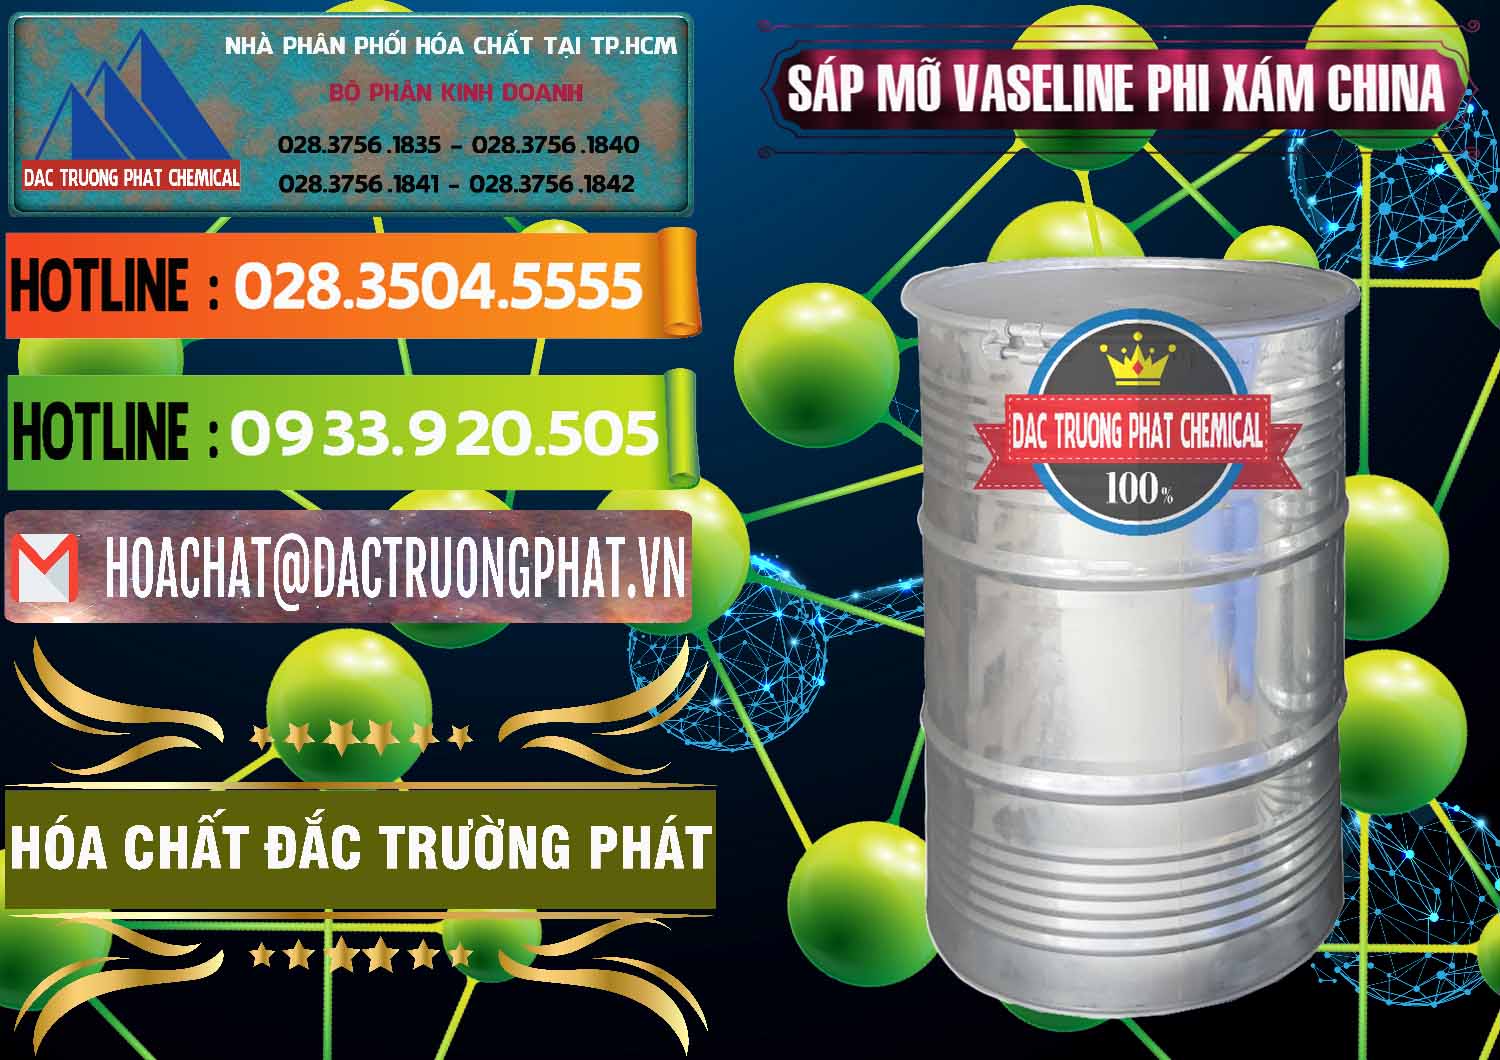 Cty kinh doanh _ bán Sáp Mỡ Vaseline Phi Xám Trung Quốc China - 0291 - Chuyên cung cấp _ phân phối hóa chất tại TP.HCM - cungcaphoachat.com.vn